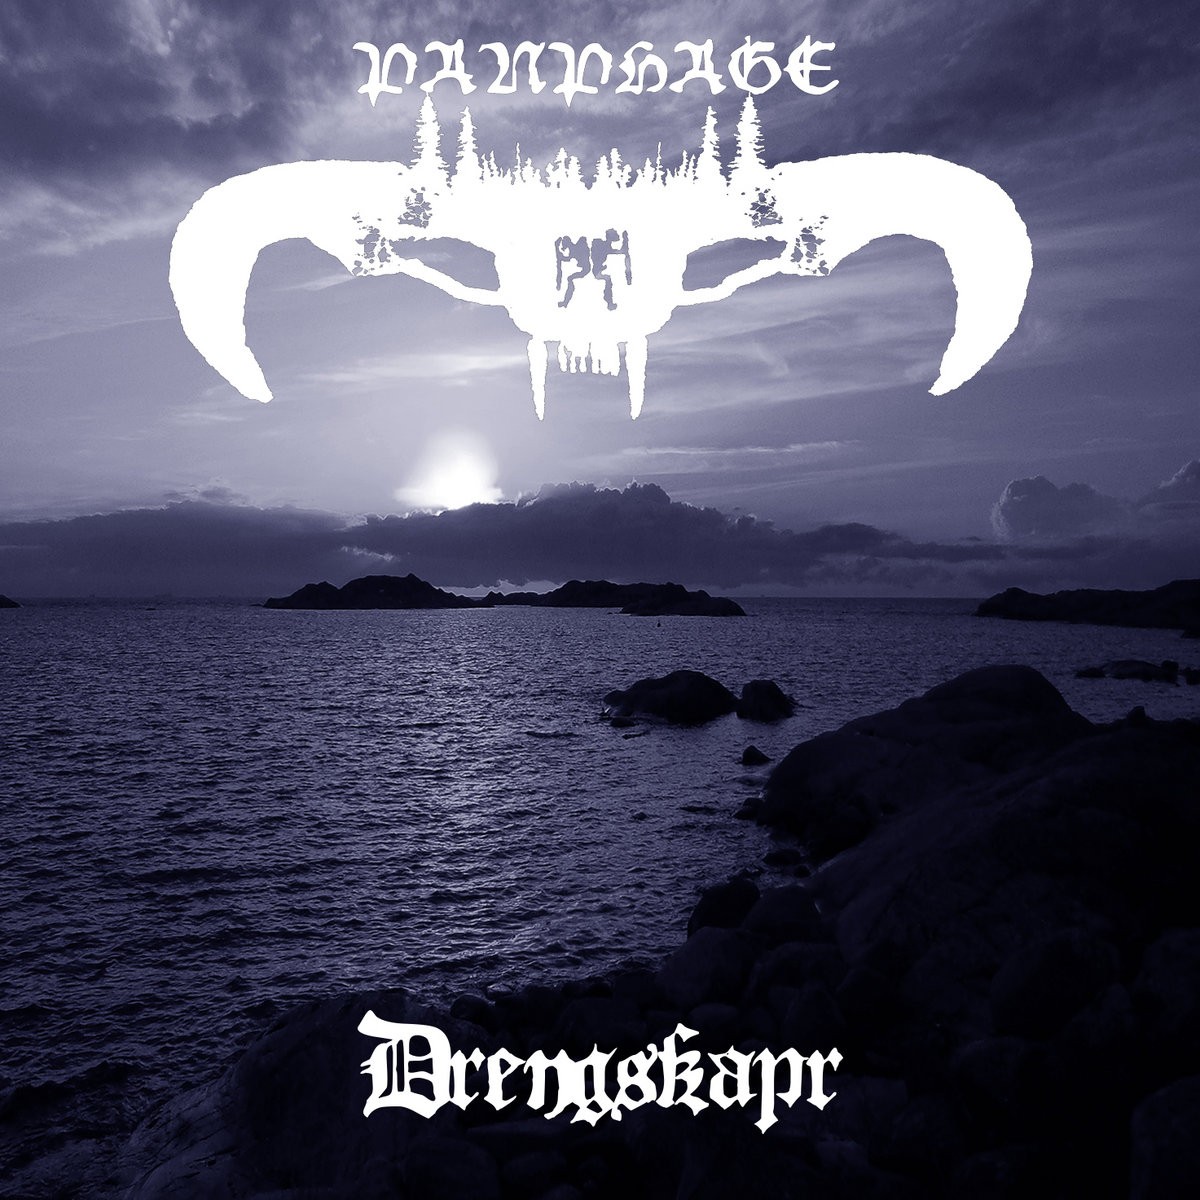 Panphage - Drengskapr (2016) Cover